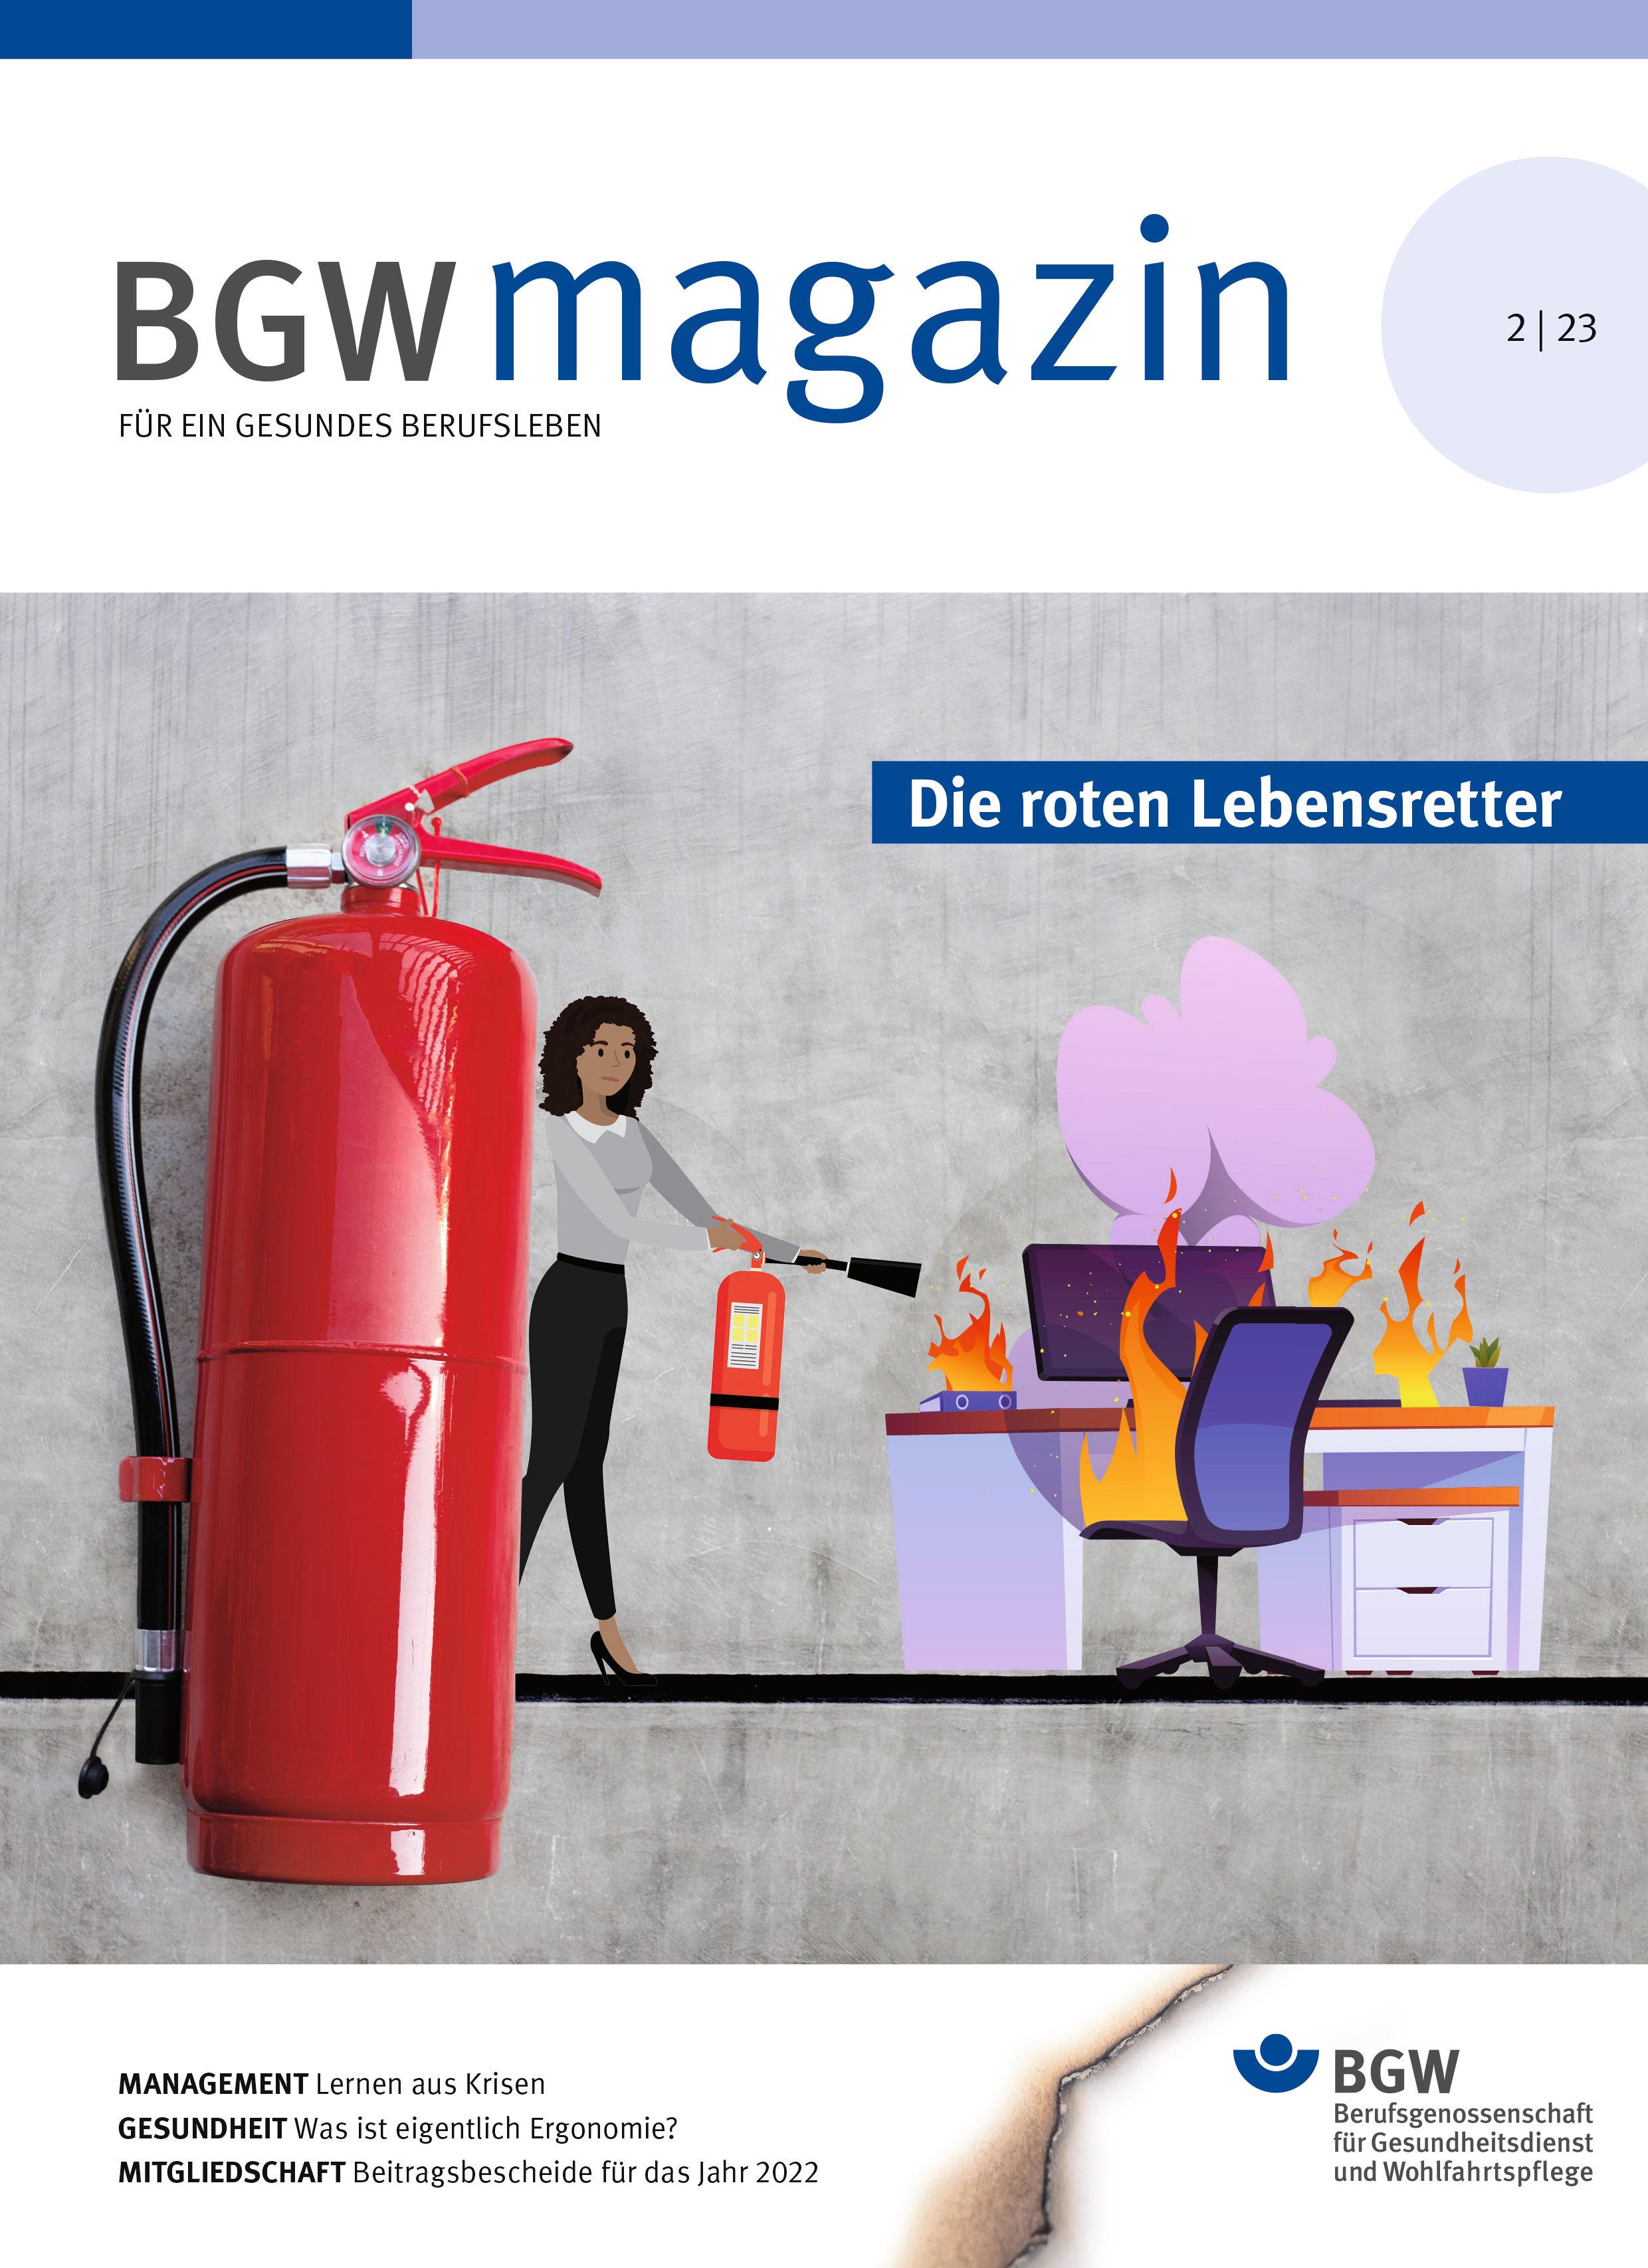 Titel BGW magazin, Ausgabe 2/23: Roter Feuerlöscher - im Hintergrund eine Illustration: Frau löscht mit einem Feuerlöscher einen brennenden Büroarbeitsplatz.